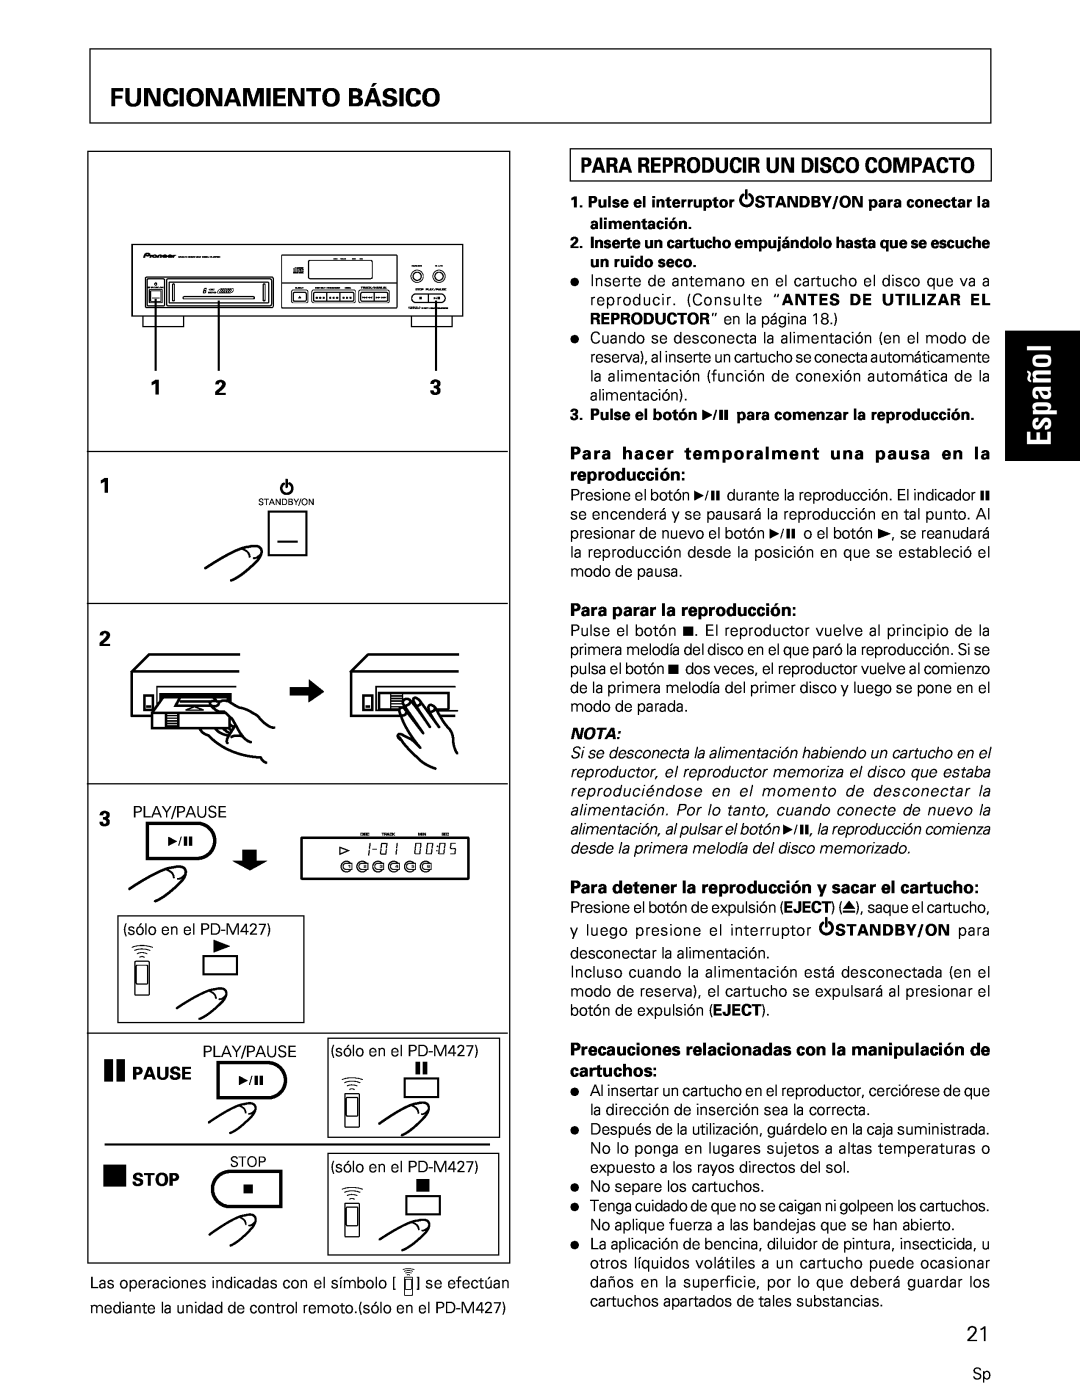 Pioneer PD-M427, PD-M407 manual Funcionamiento Básico, Español, 8PAUSE, 7STOP, Para parar la reproducción, Nota 